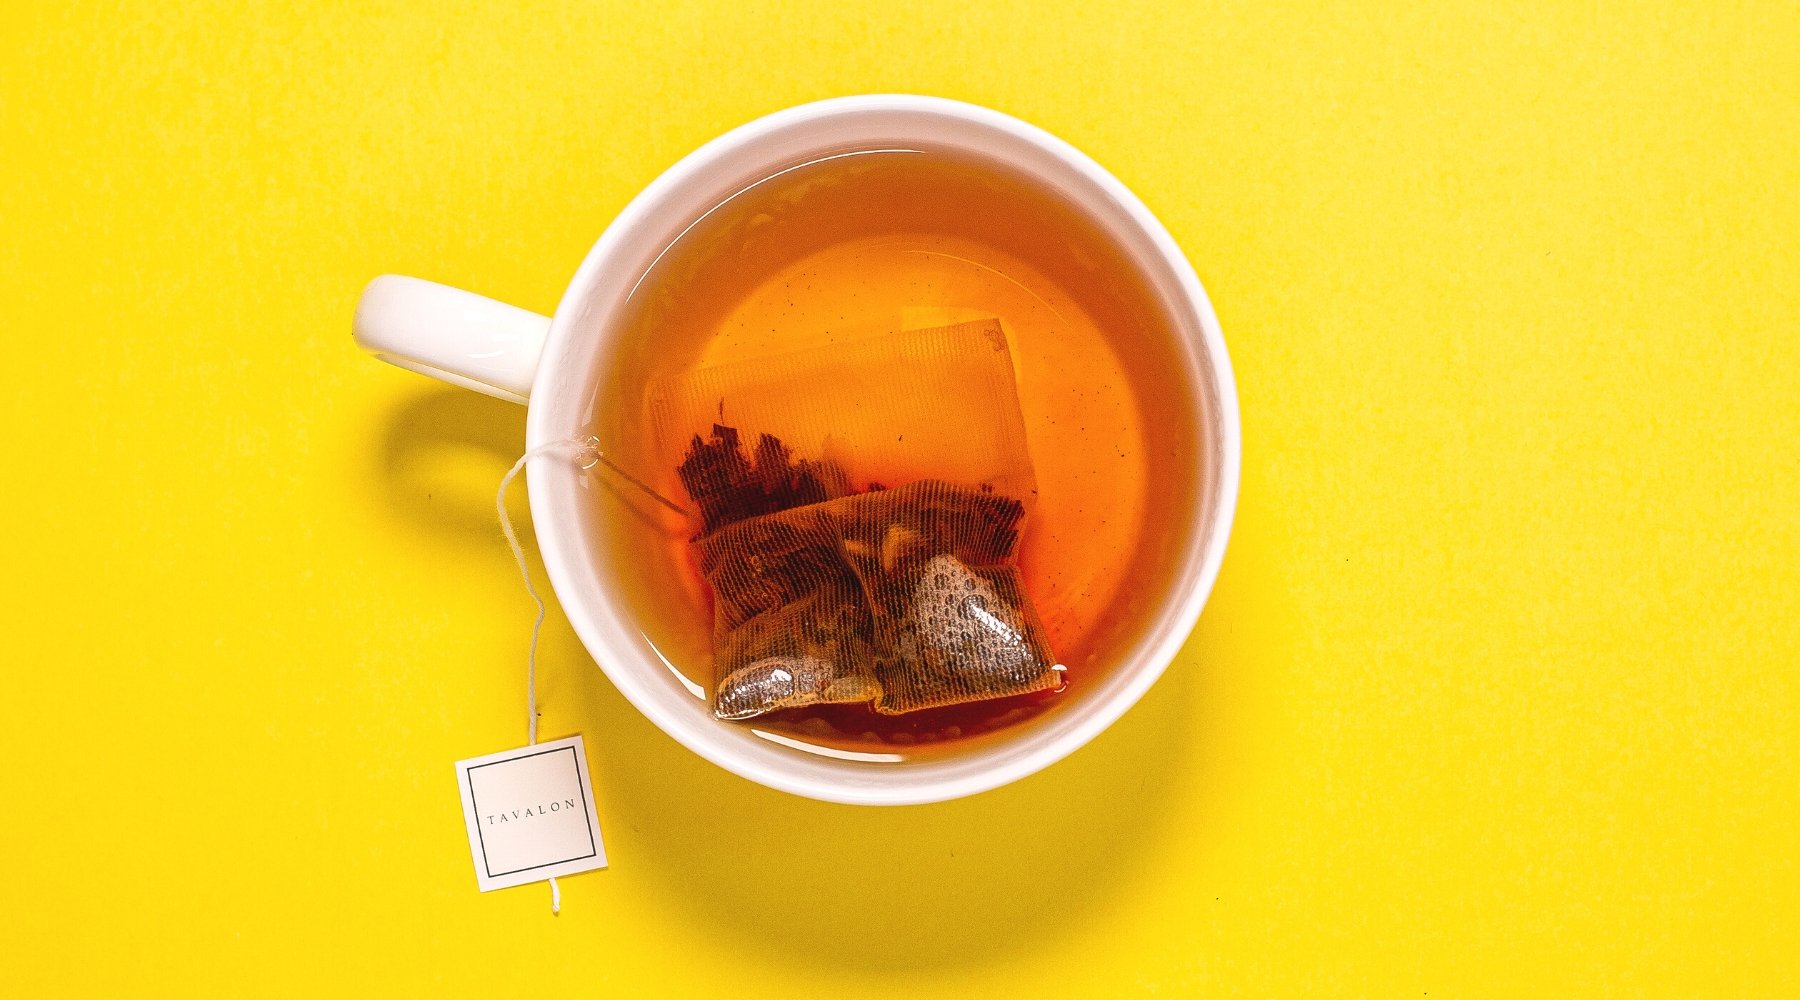 Tavalon Teabag in a Cup | Tavalon Tea Australia & New Zealand